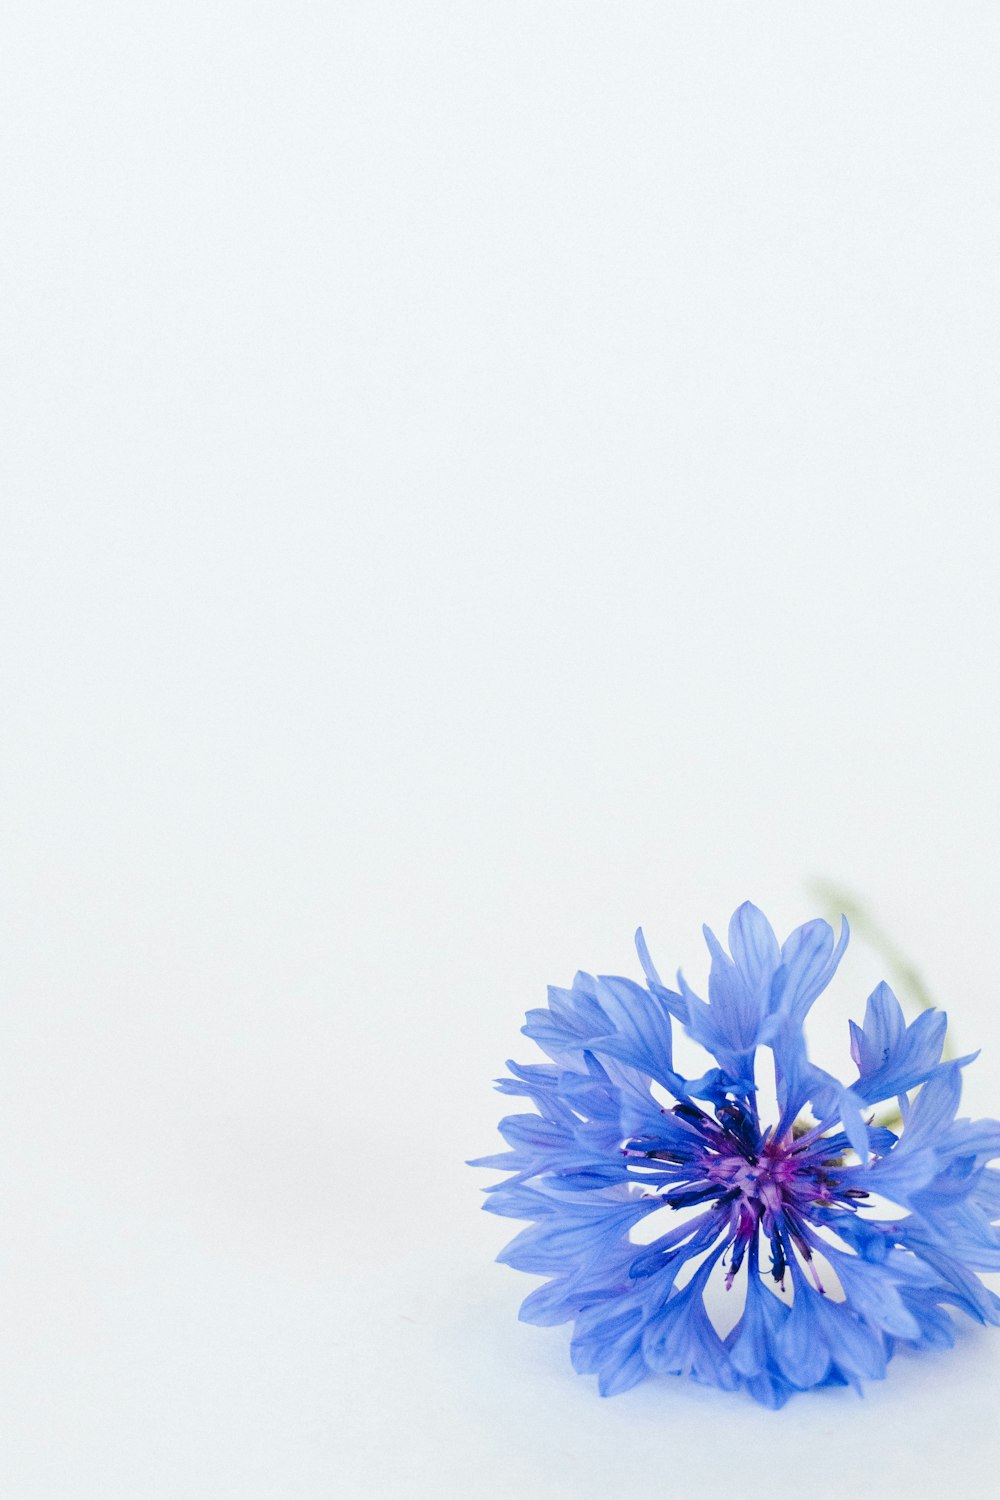 fleur bleue sur fond blanc